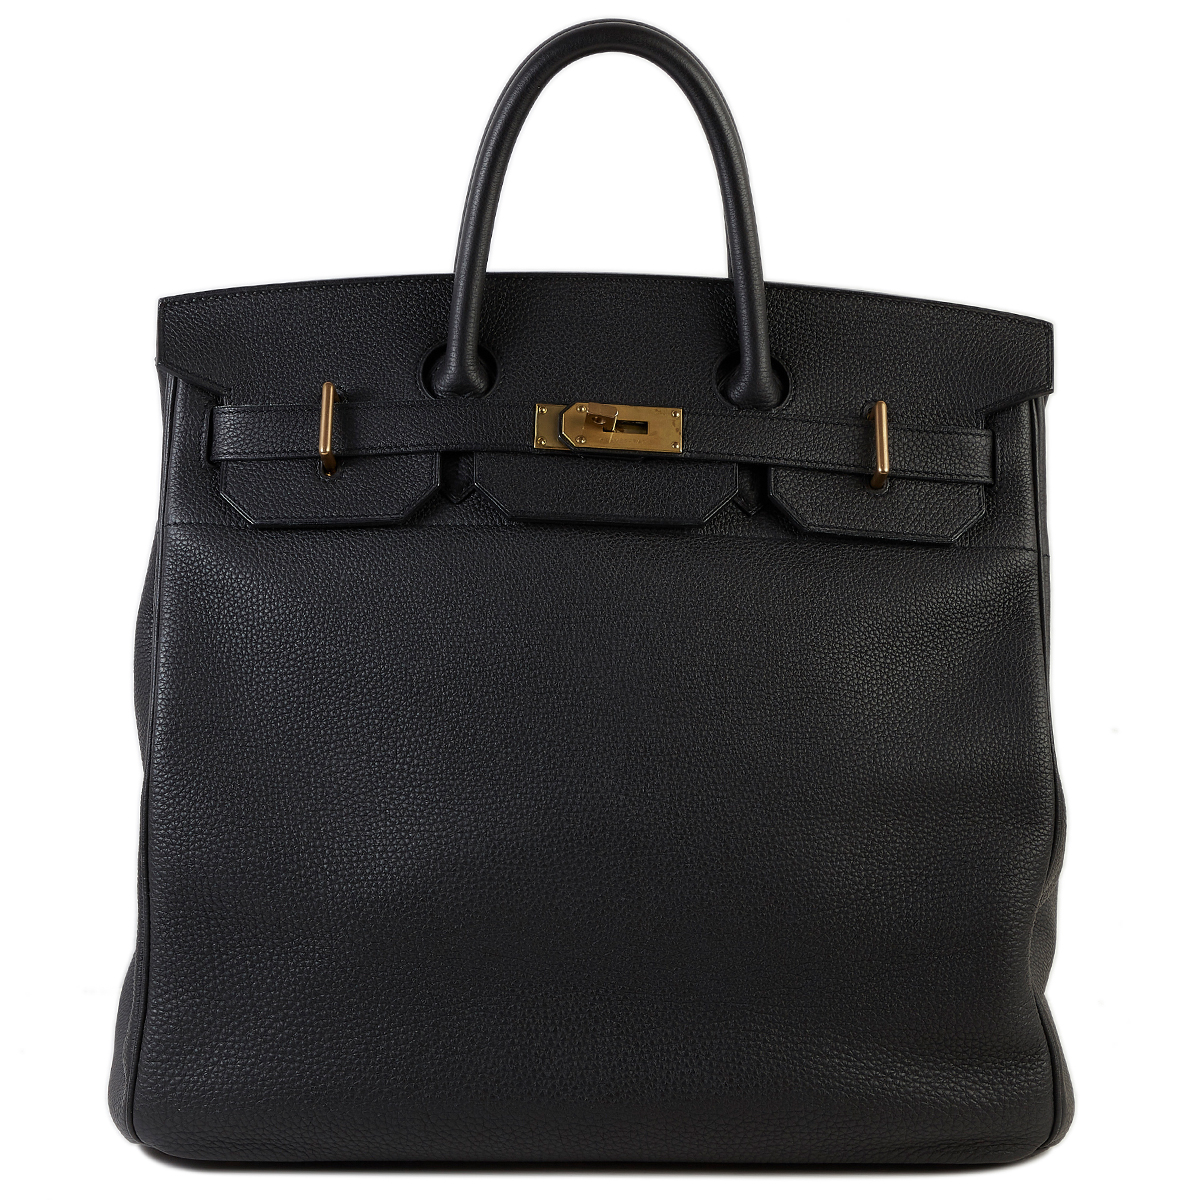 HERMÈS Haut à Courroies HAC 40 travel bag in Black Togo leather